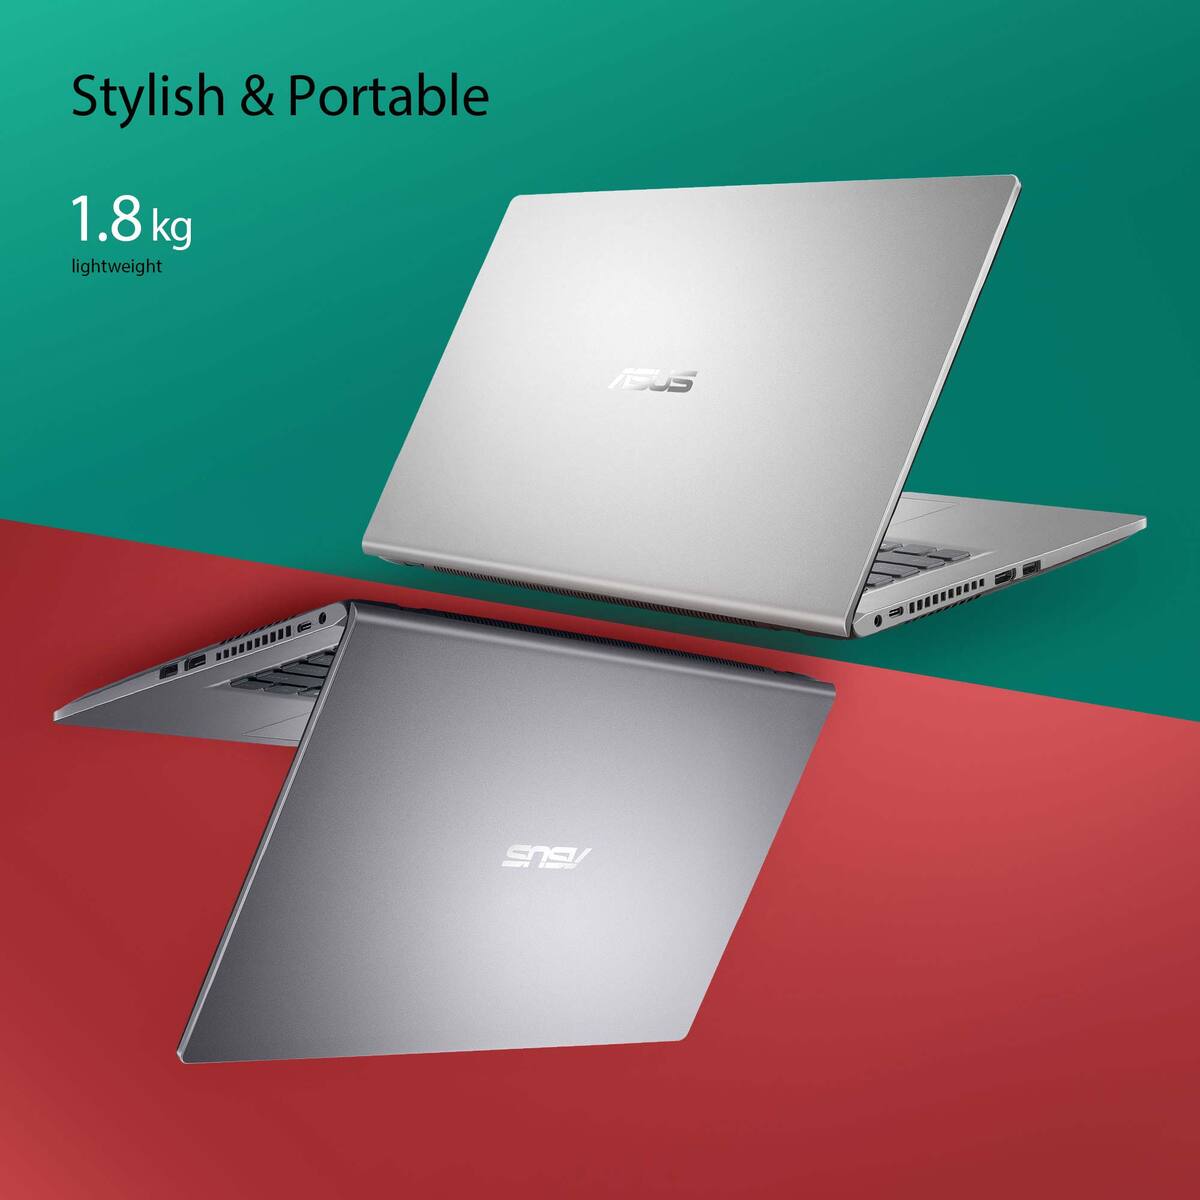 Asus Notebook X515FA-BR039T Ci3, 15.6" HD, 4GB RAM, 256GB SSD, Windows 10, Silver